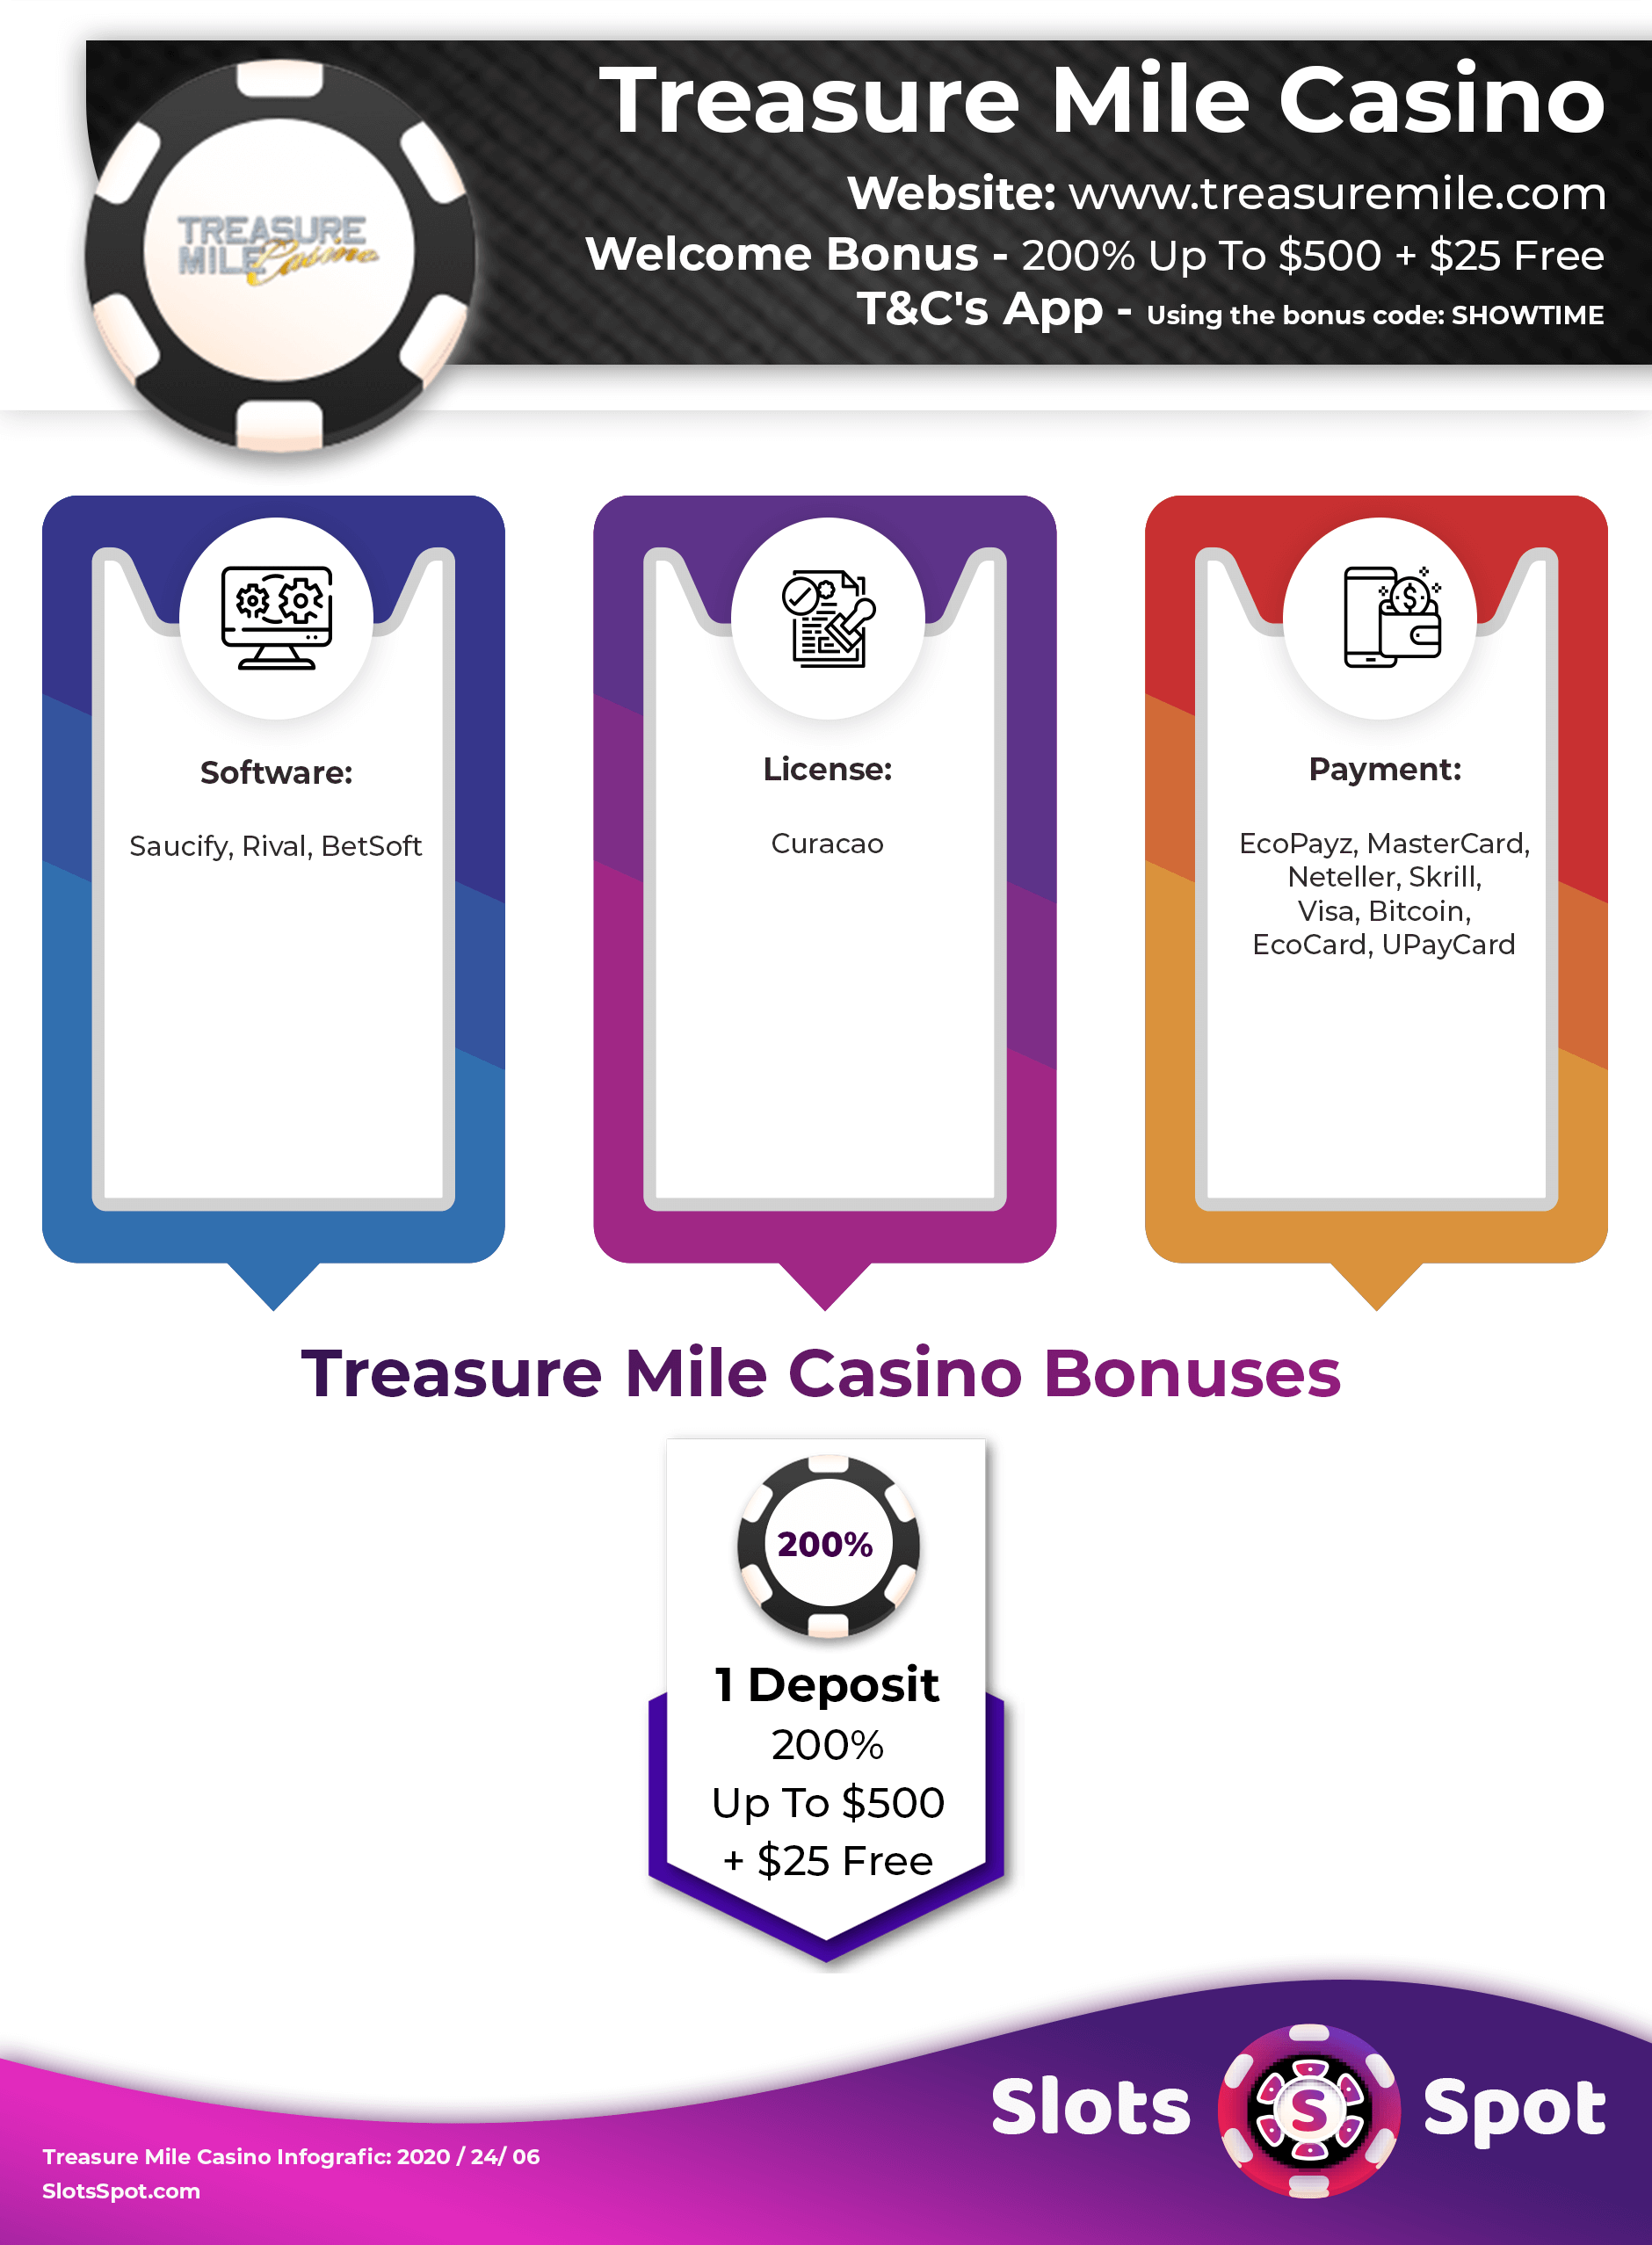 Treasure mile casino free chip